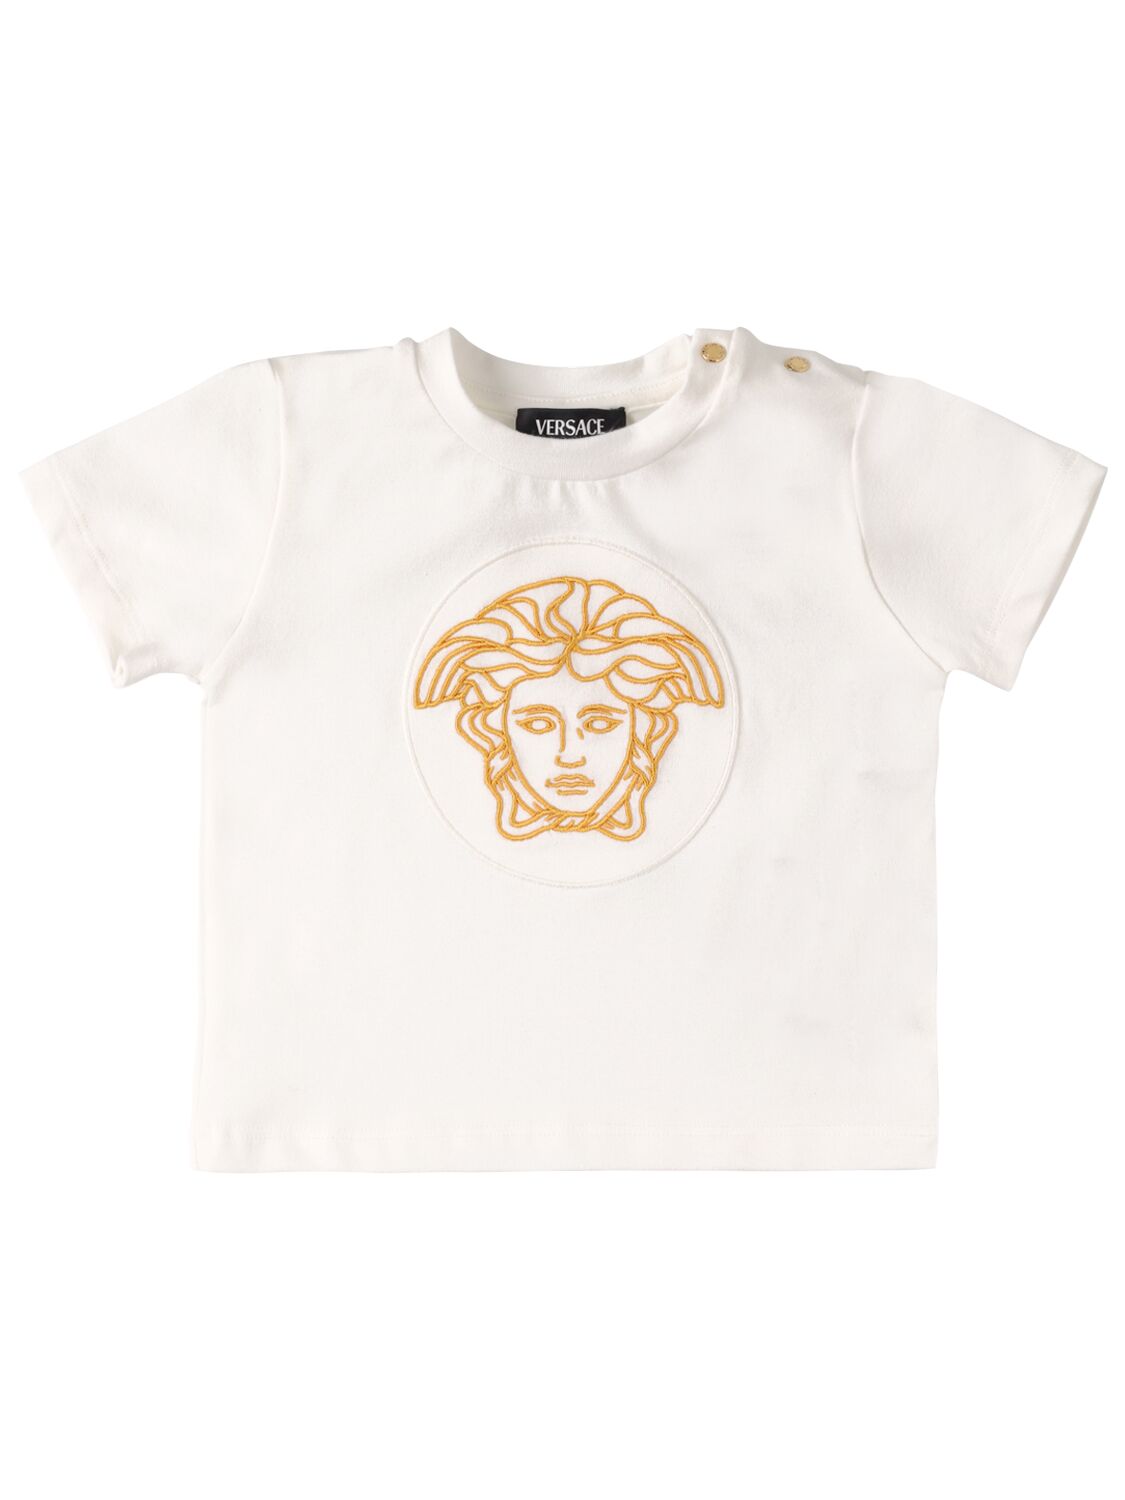 Versace Babies' 刺绣棉质平纹针织t恤 In White,gold